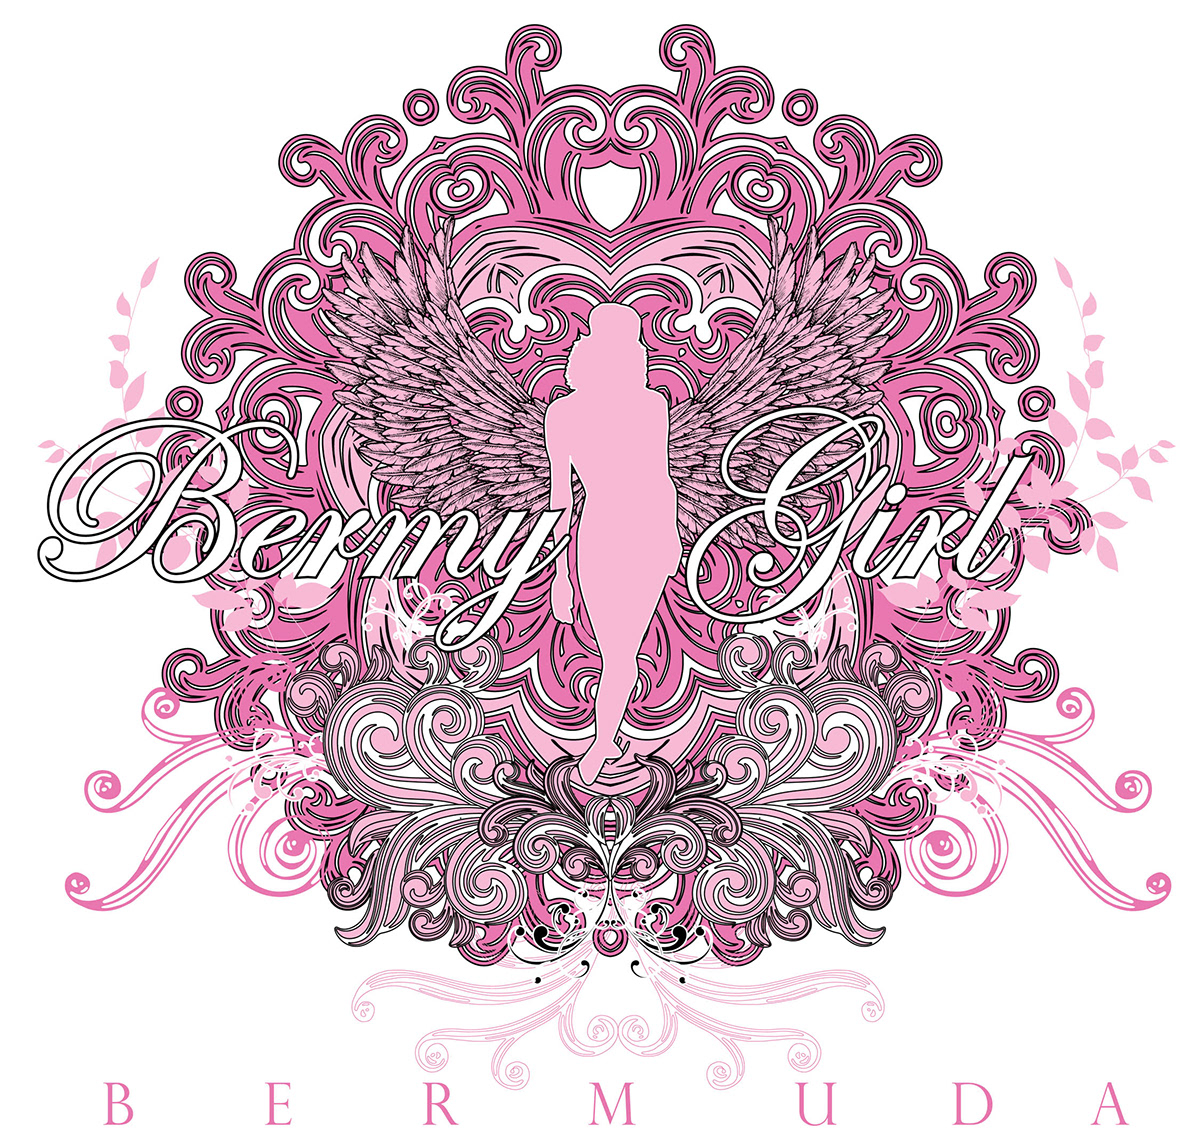 Bermuda souvenirs custom tshirts tees